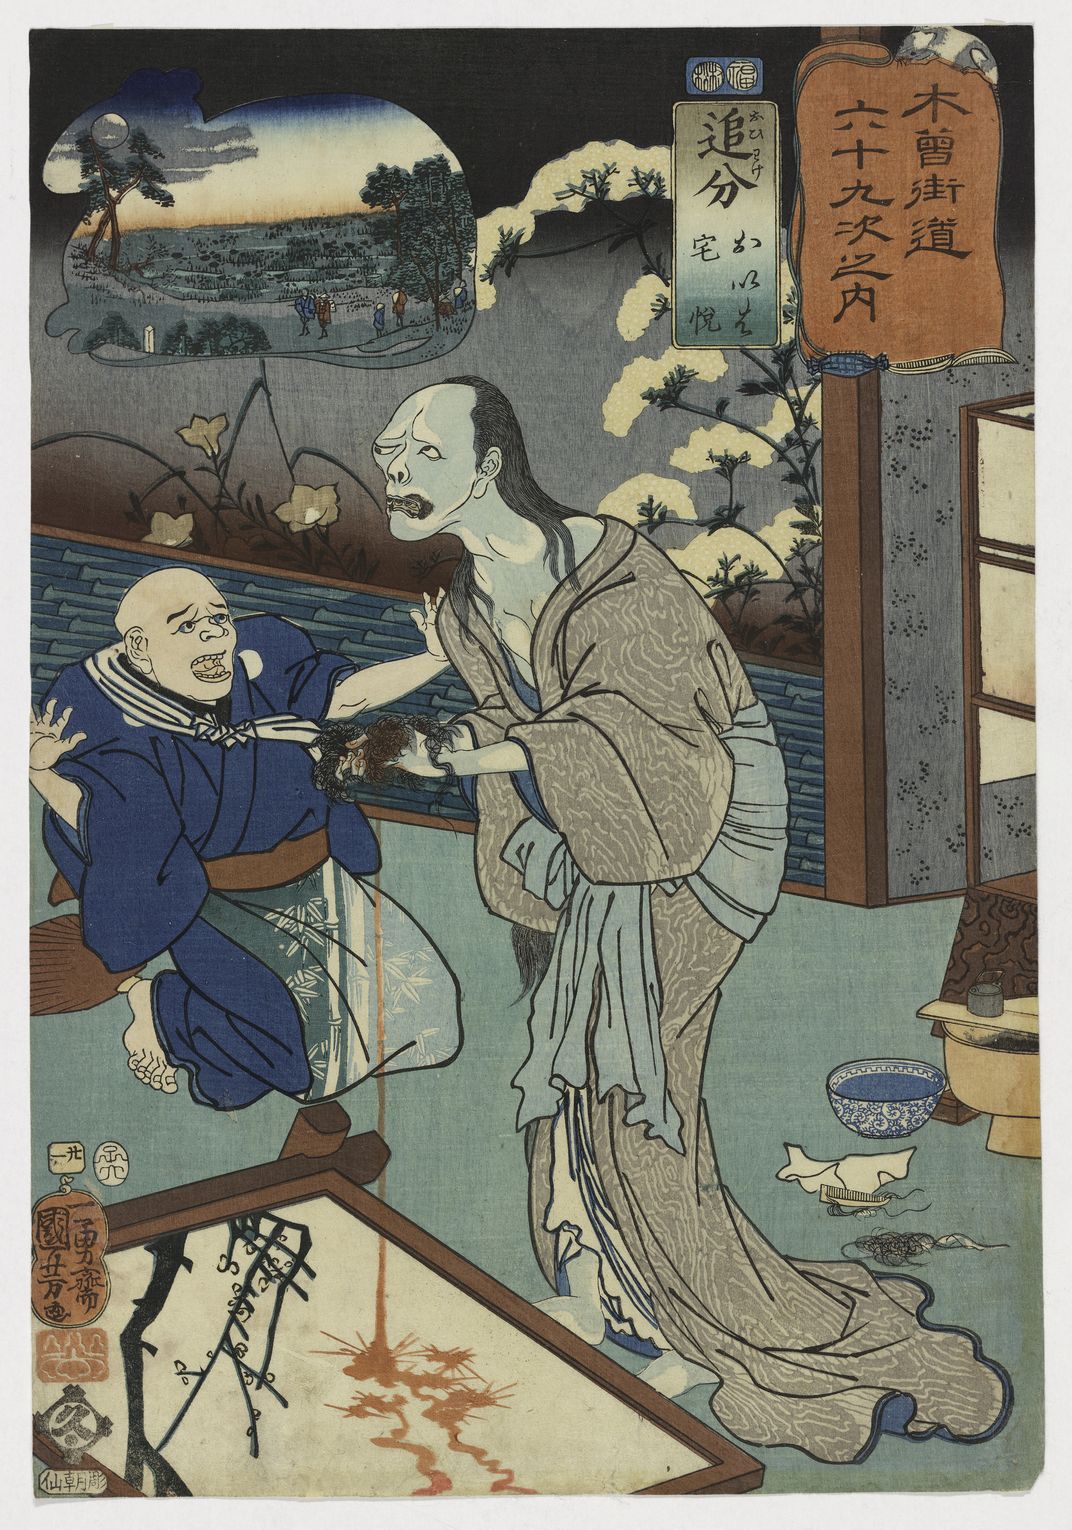 Oiwake: Oiwa and Takuetsu, Utagawa Kuniyoshi, woodblock print, 1852